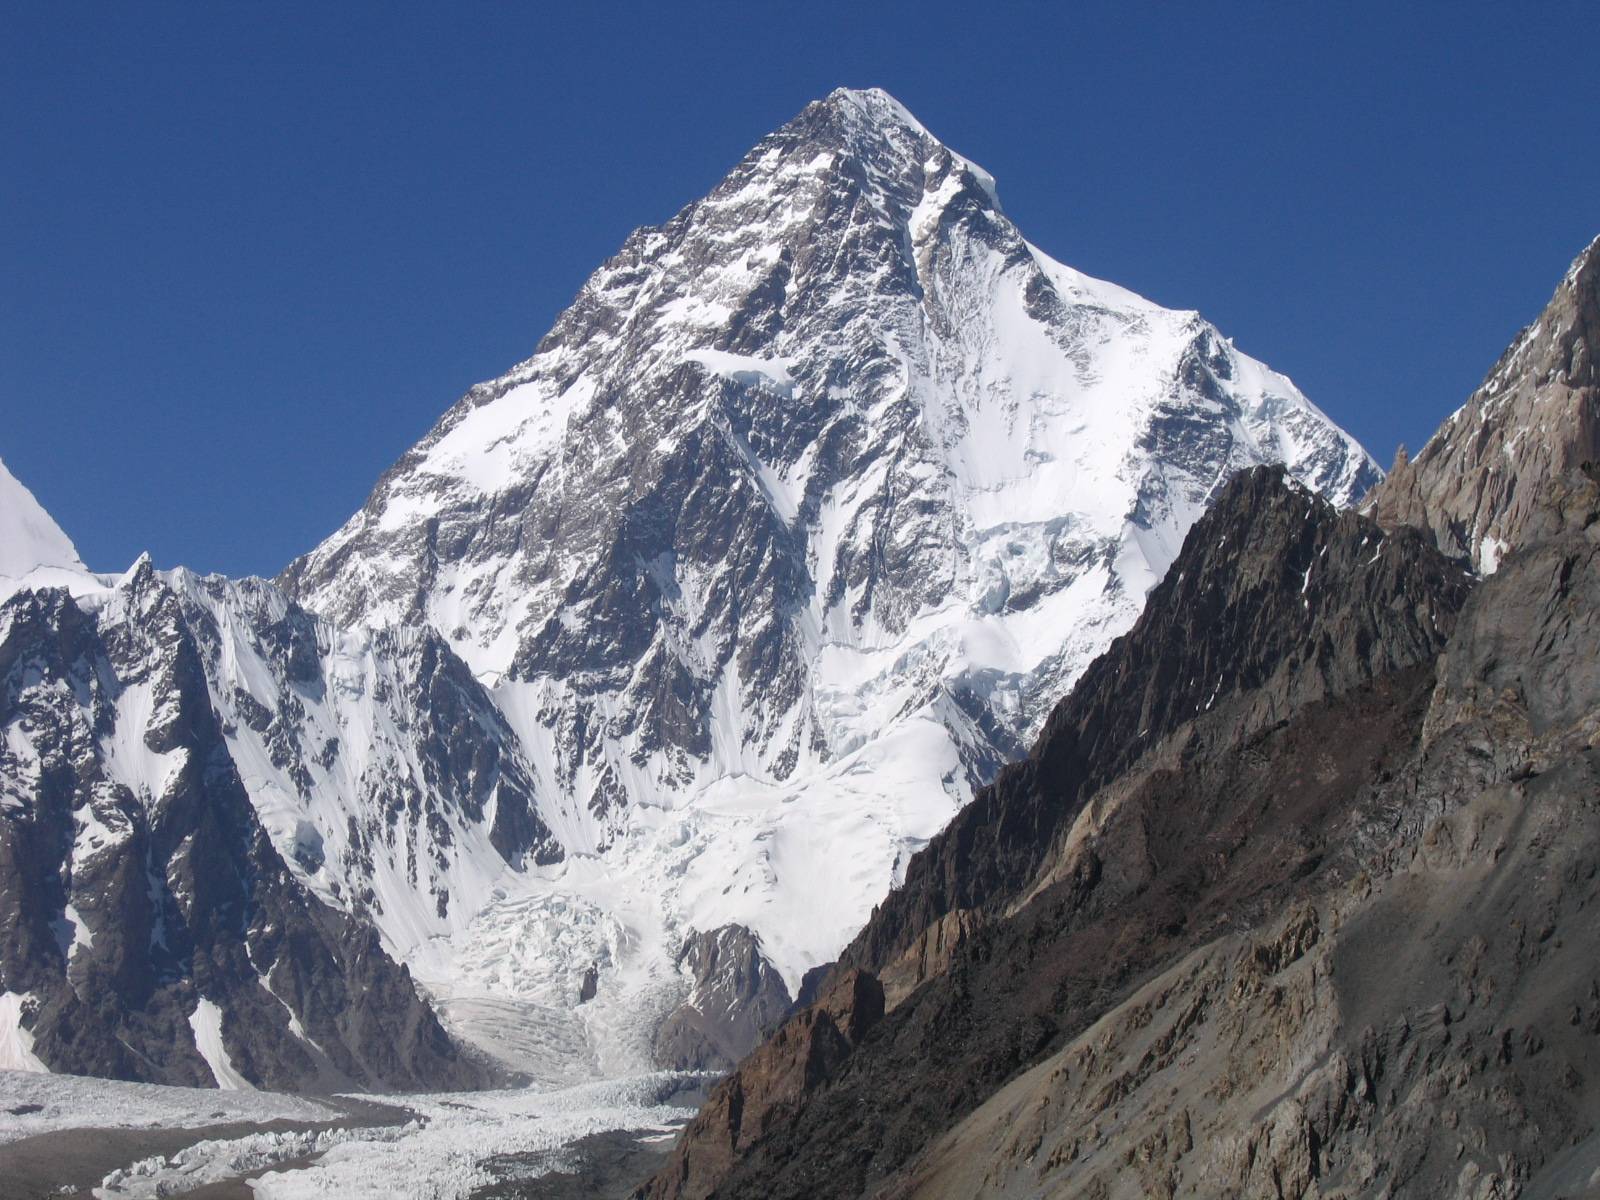  Prvi put u historiji alpinizma: Usred zime osvojili vrh K2, divlje planine